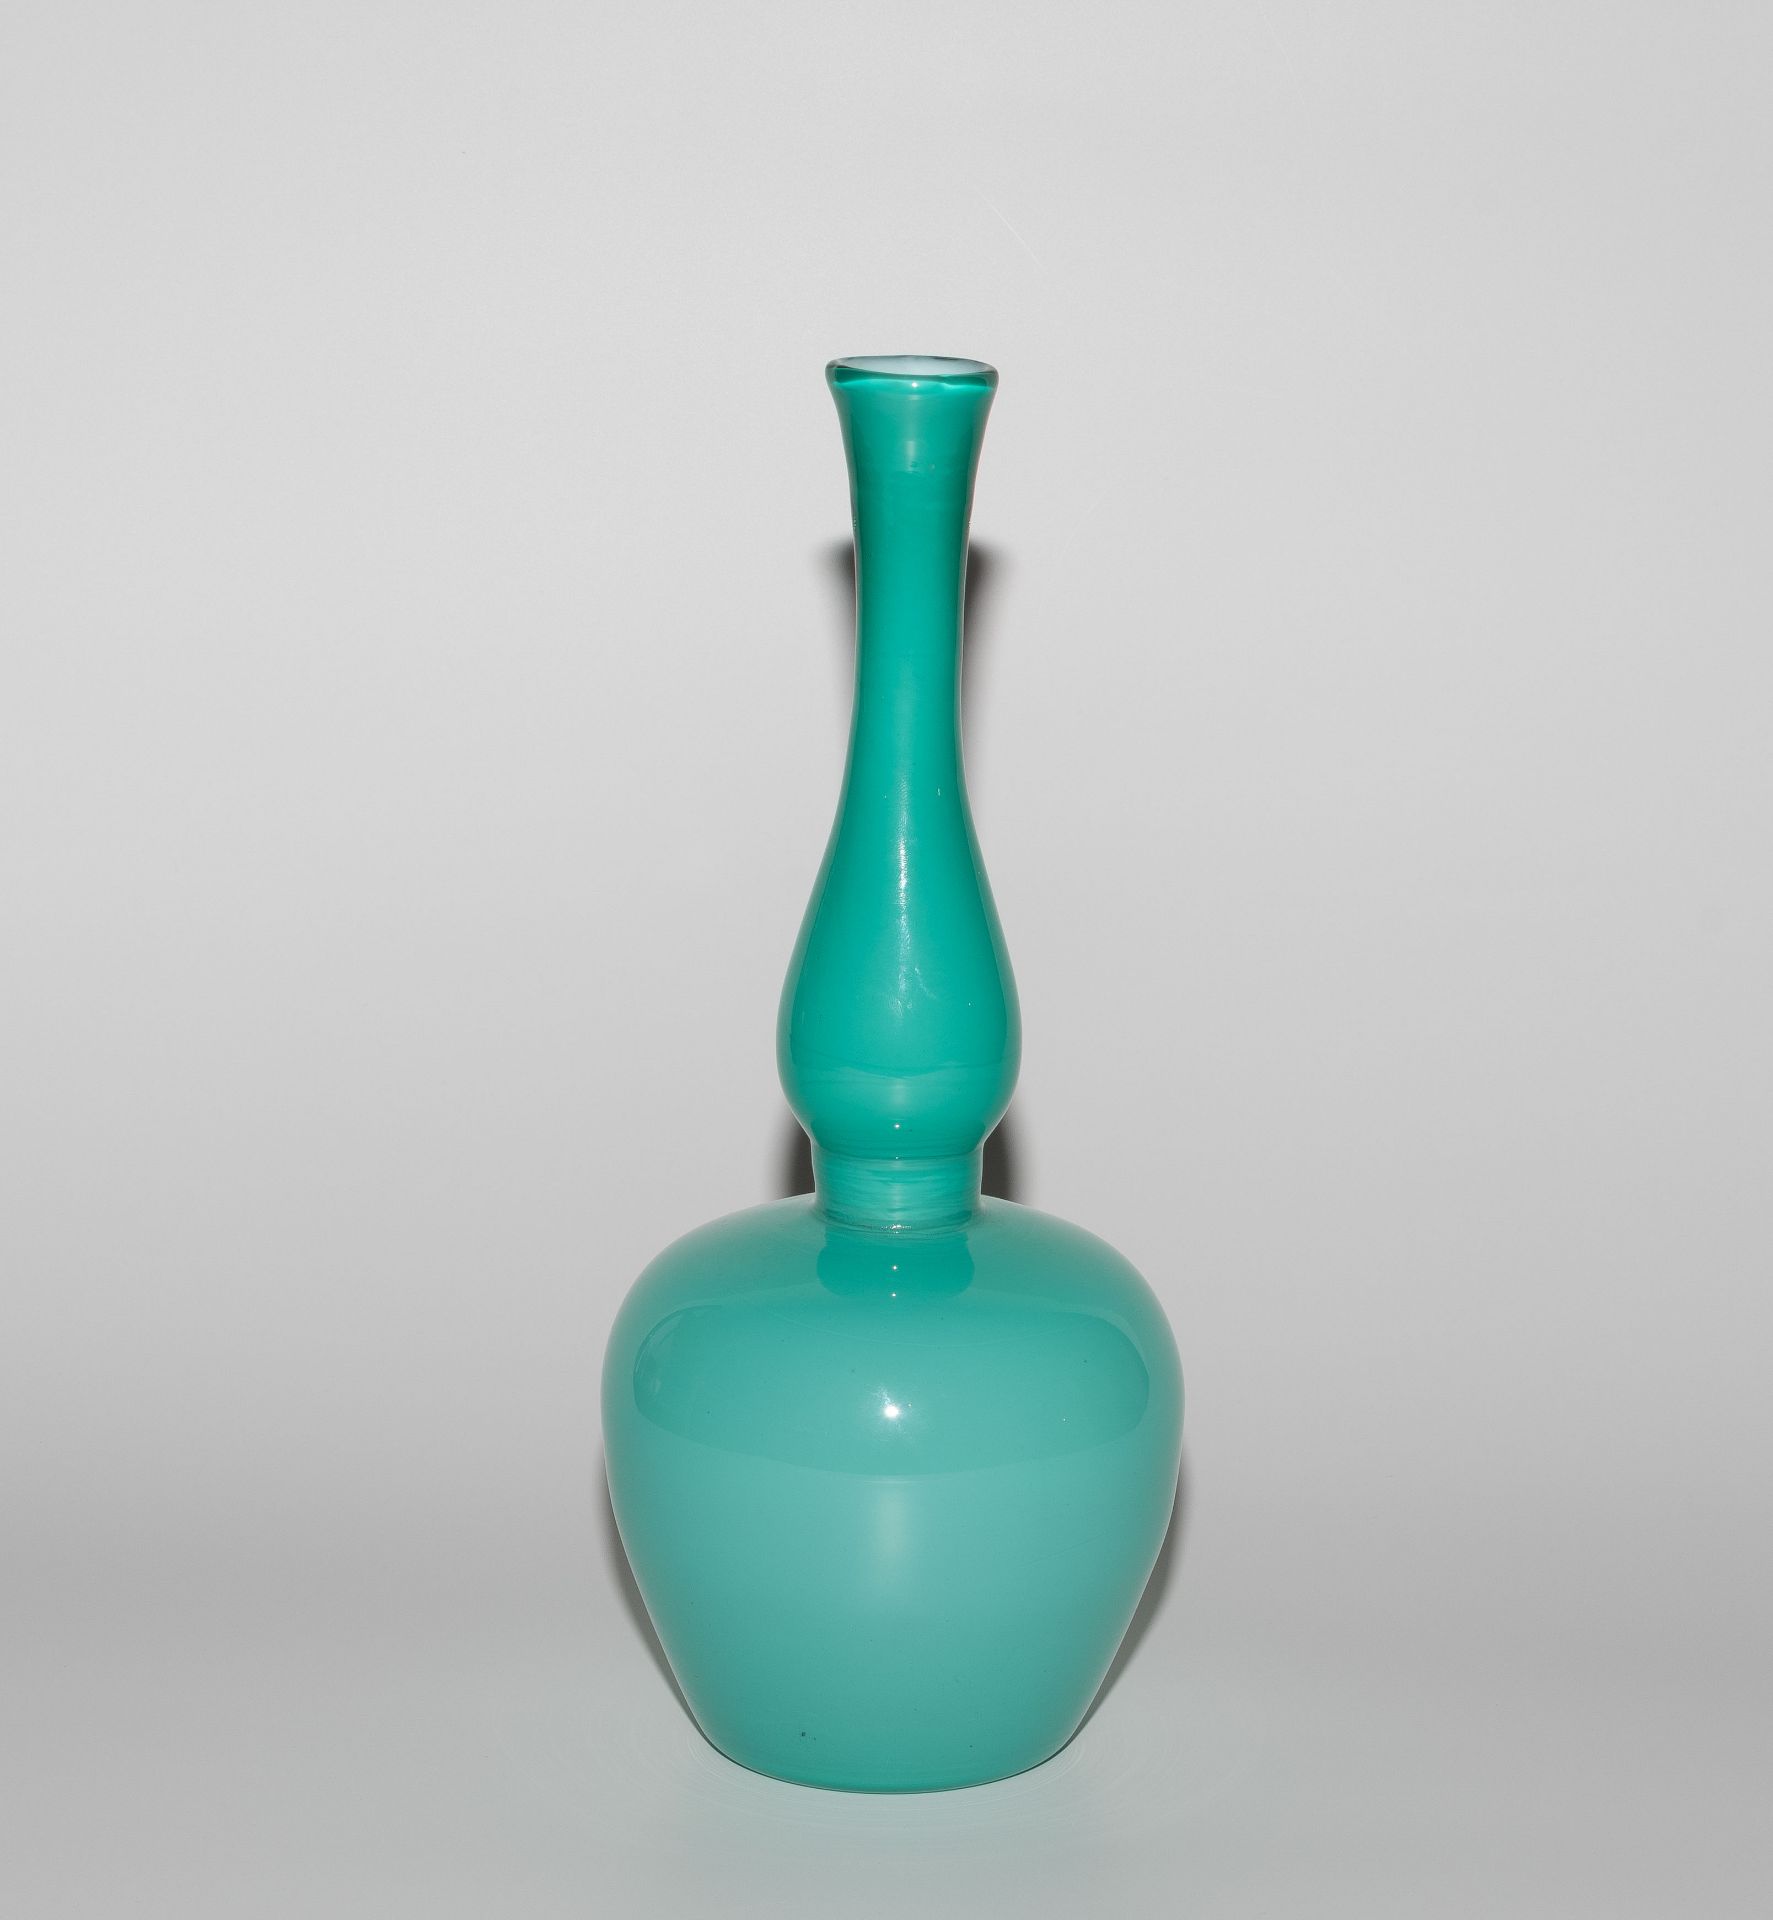 Paolo Venini, Vase "Incamiciato, Modell 3902" - Image 4 of 8